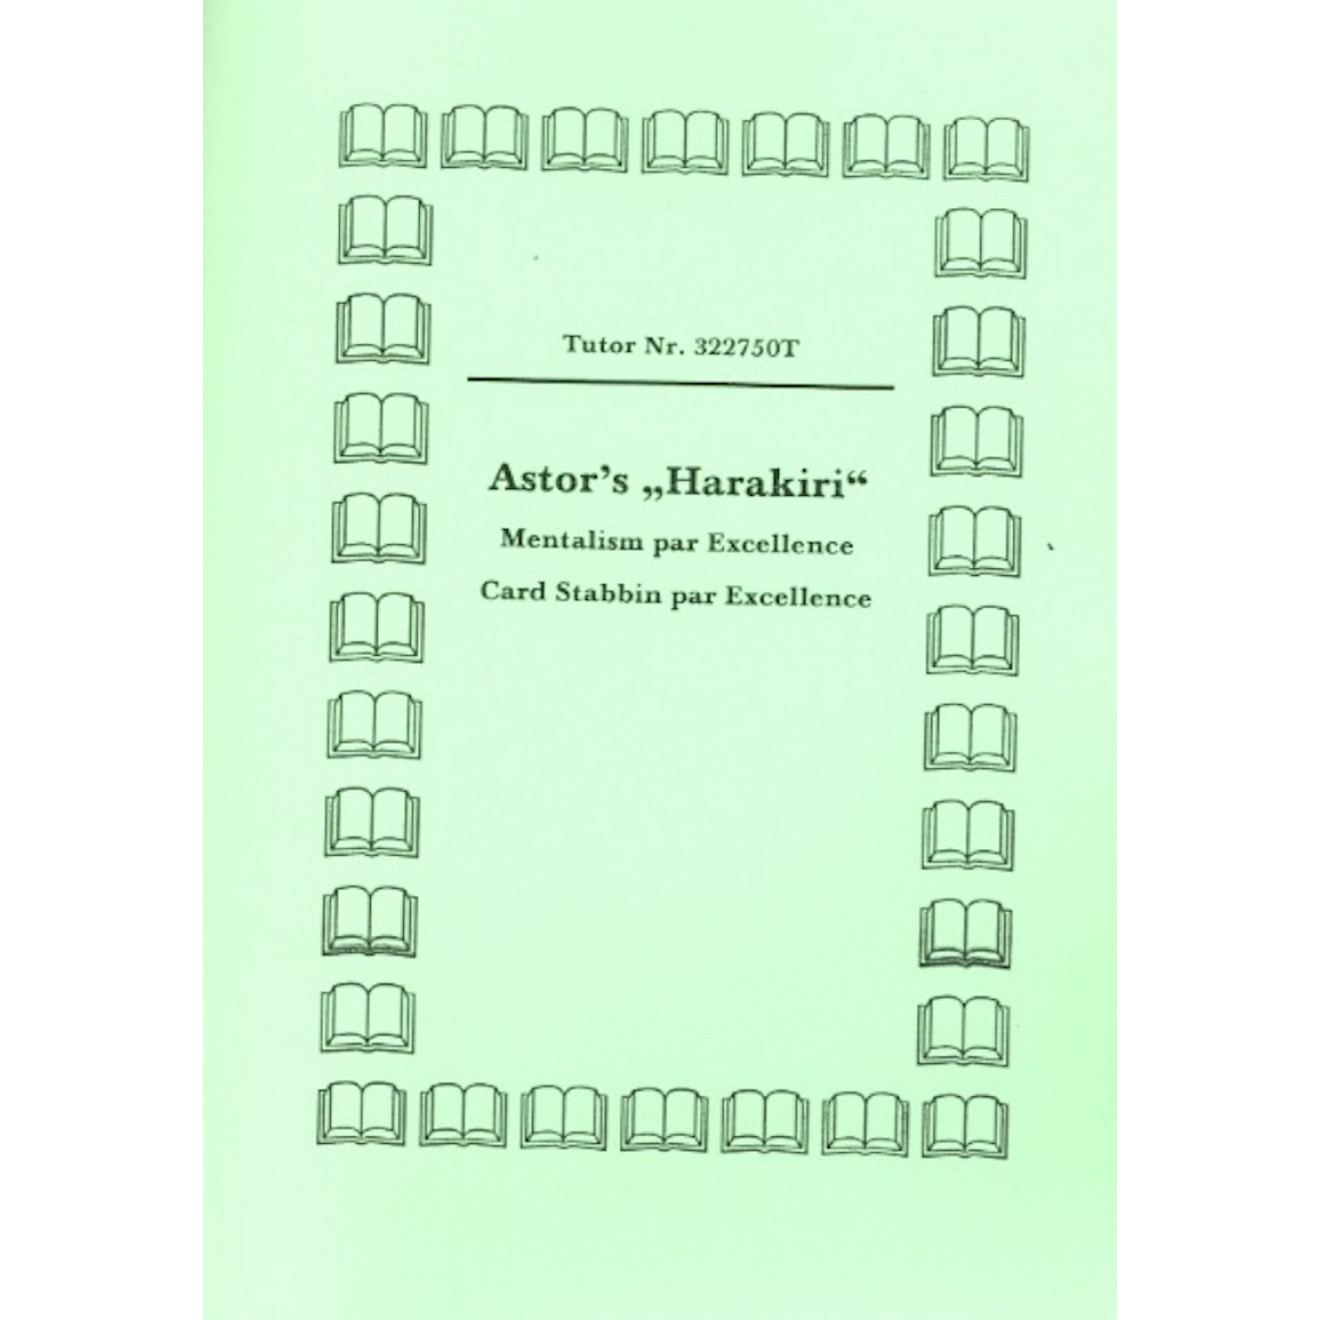 Astor's "Harakiri"